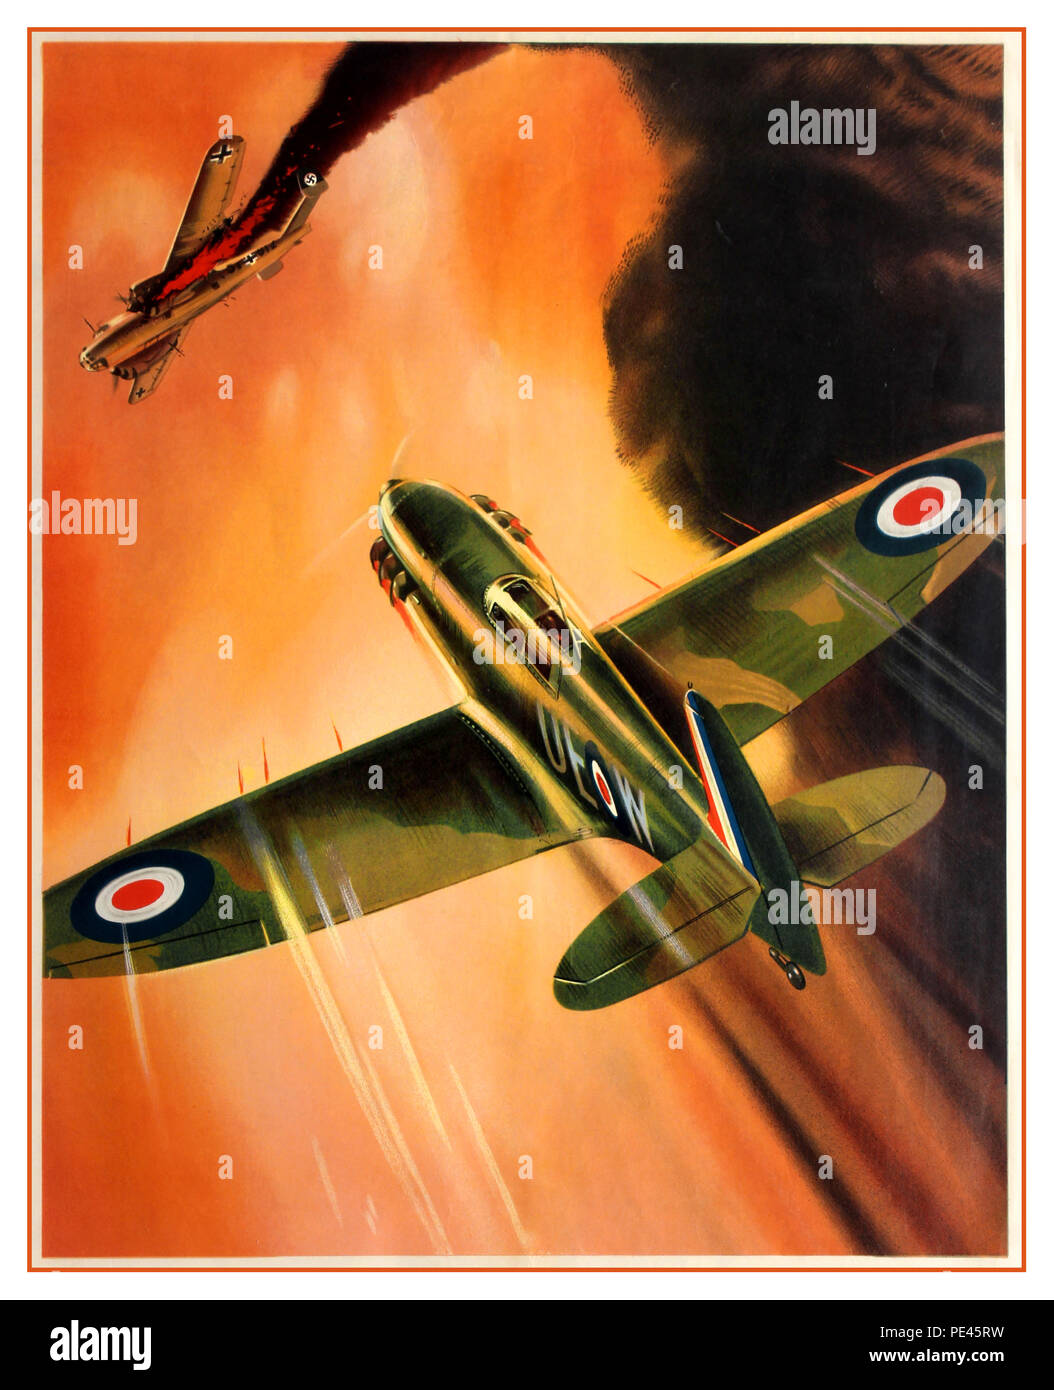 WW2 British UK vintage propaganda di guerra mondiale due poster artwork dotato di uno Spitfire fighter aeromobili battenti verso un criticamente danneggiato Luftwaffe Nazista Tedesco piano bombardiere, con fumo scuro proveniente da un motore di masterizzazione 1940s Battaglia di Bretagna.... legendées: 'Avanti alla vittoria" Foto Stock